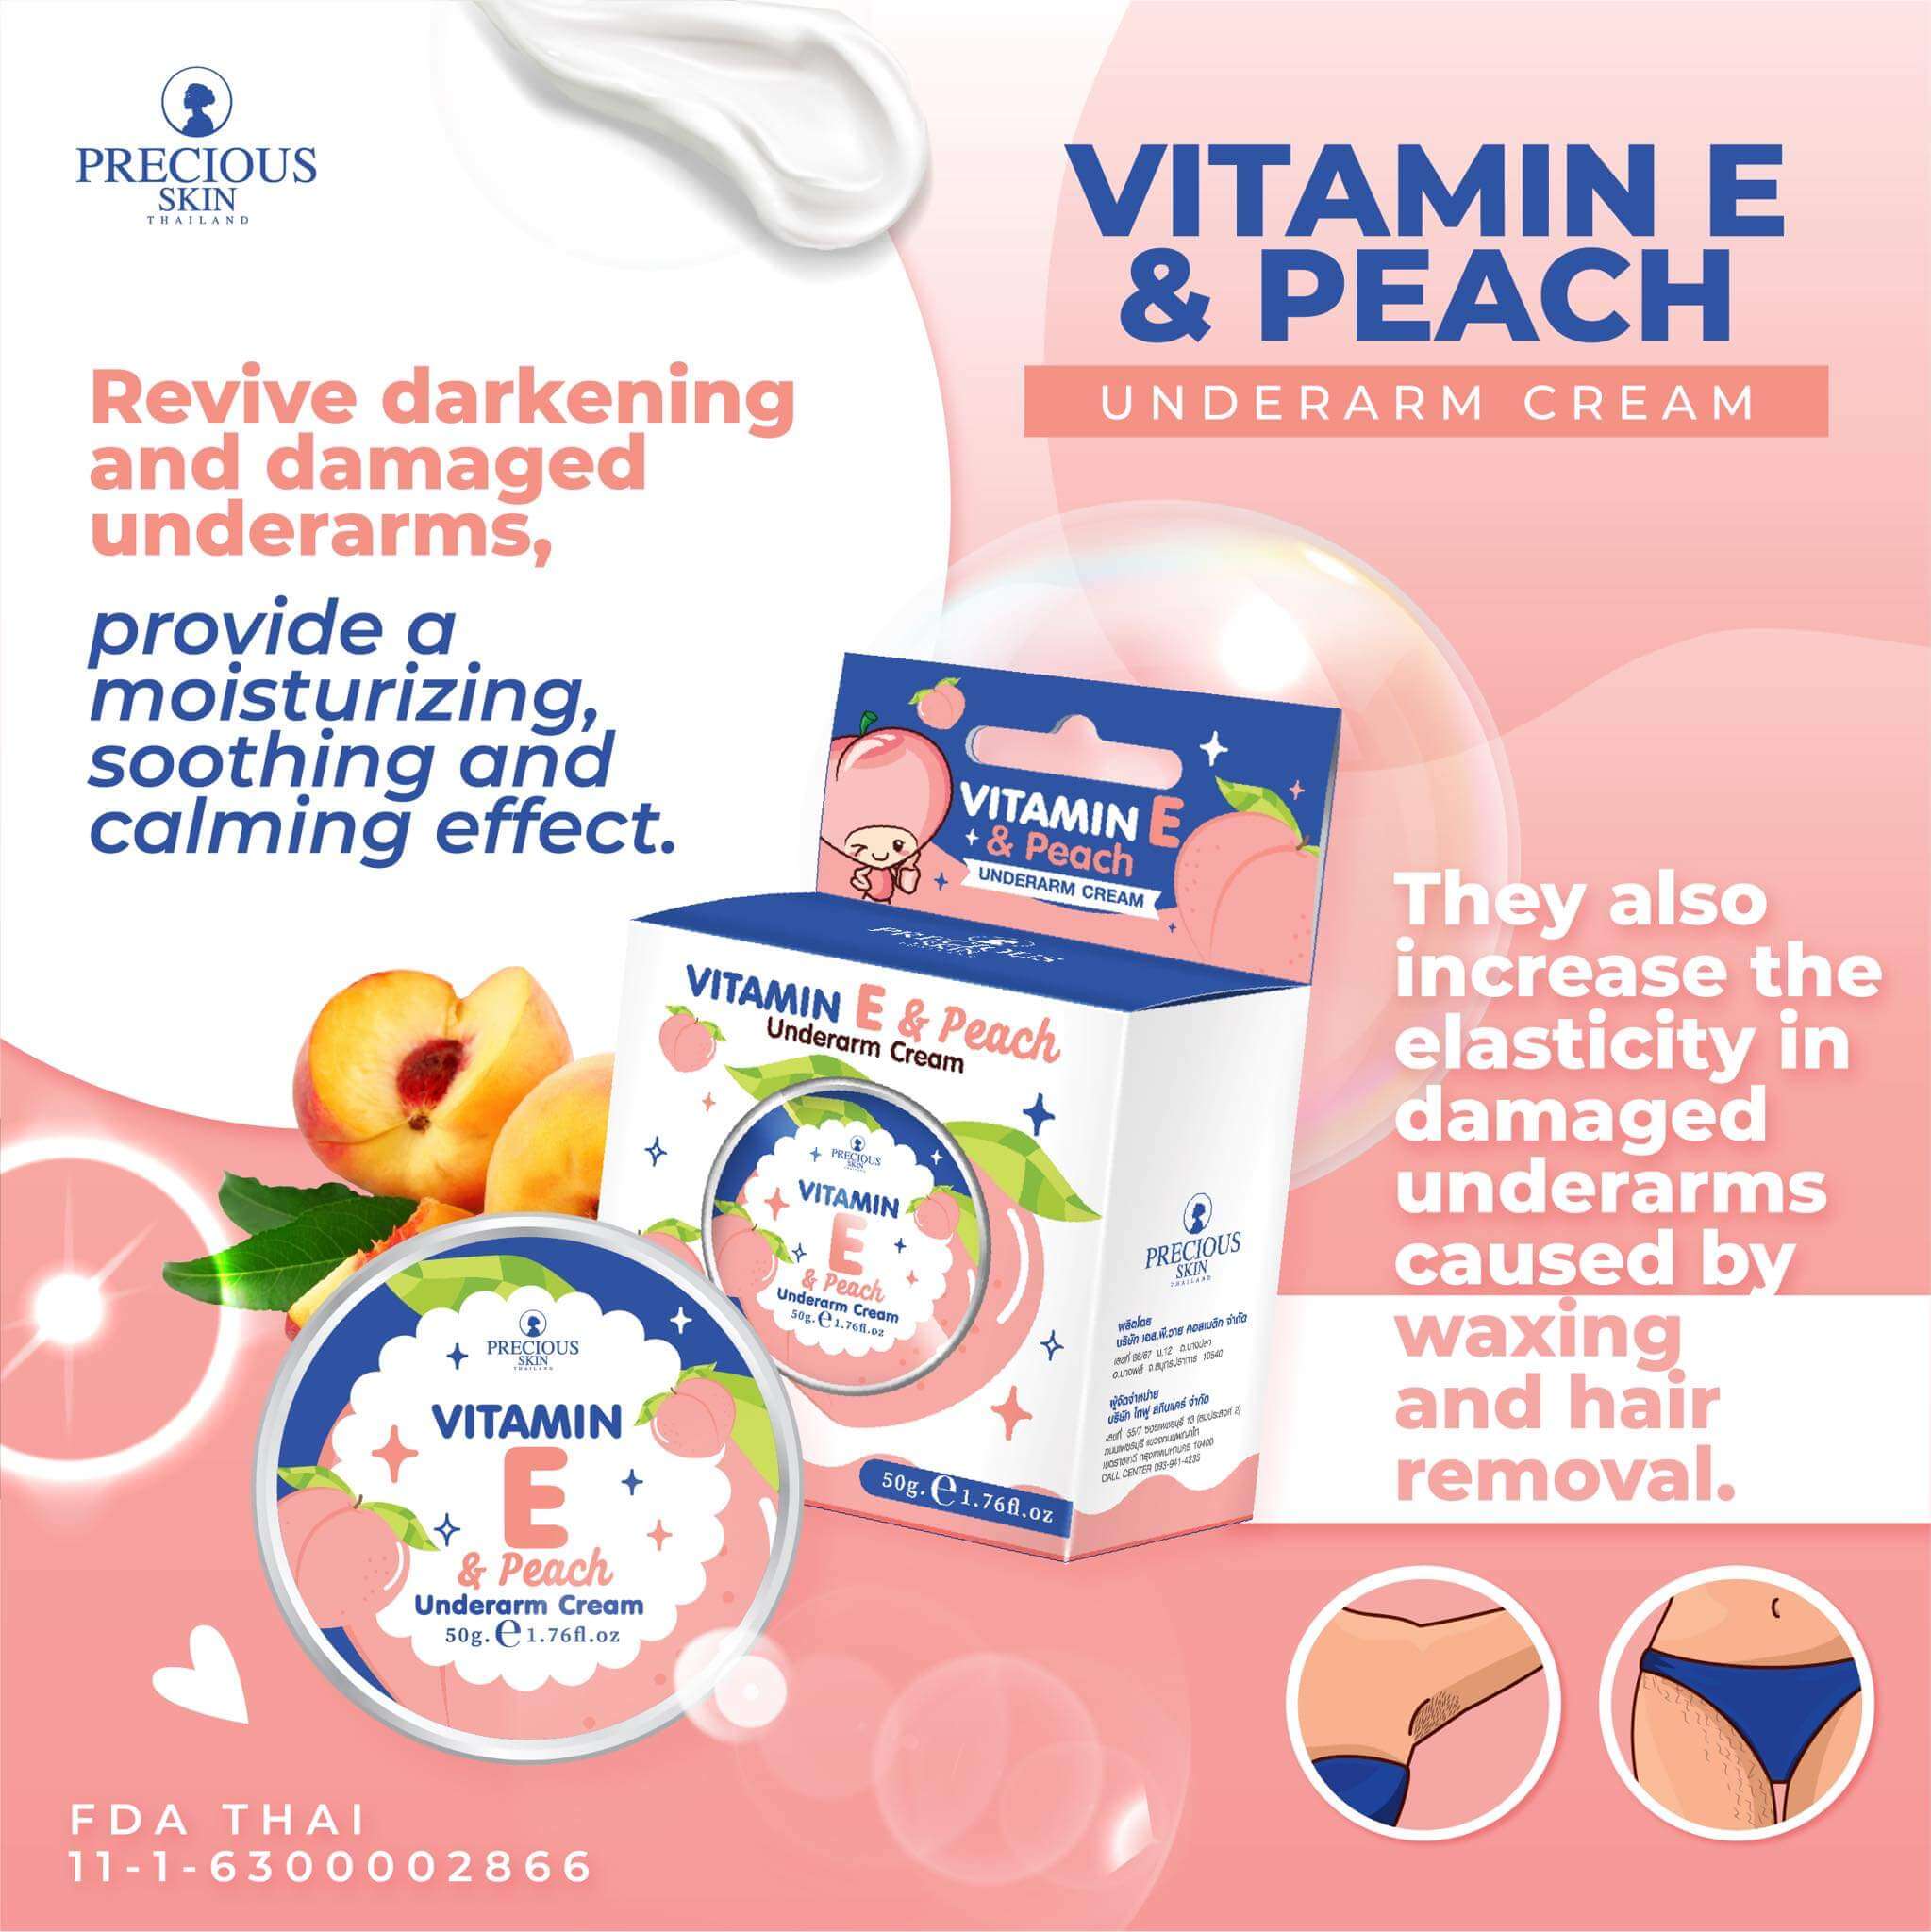 Vitamin E & Peach Underarm Cream